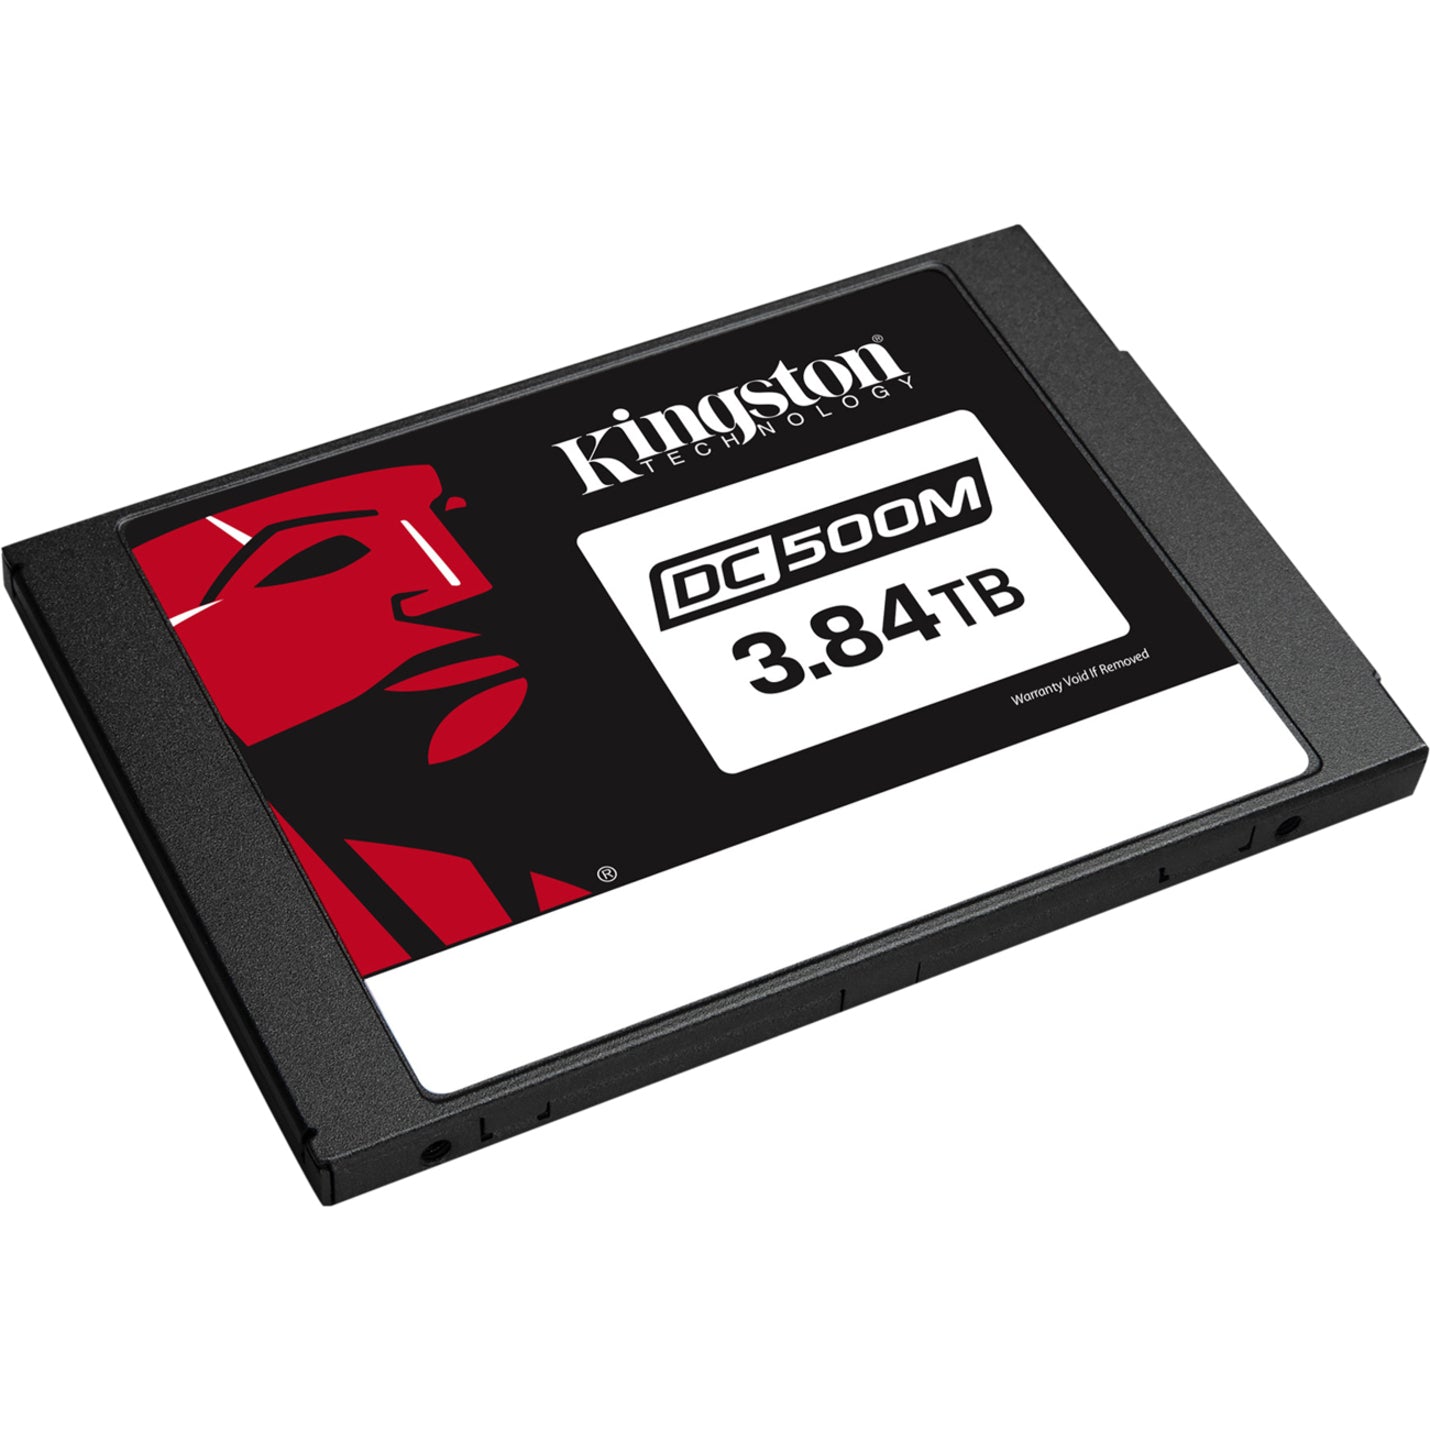 Kingston SEDC500M/3840G 3840G DC500M (Mixed-Use) 2.5" Enterprise SATA SSD, 3.84 TB, 5 Year Warranty